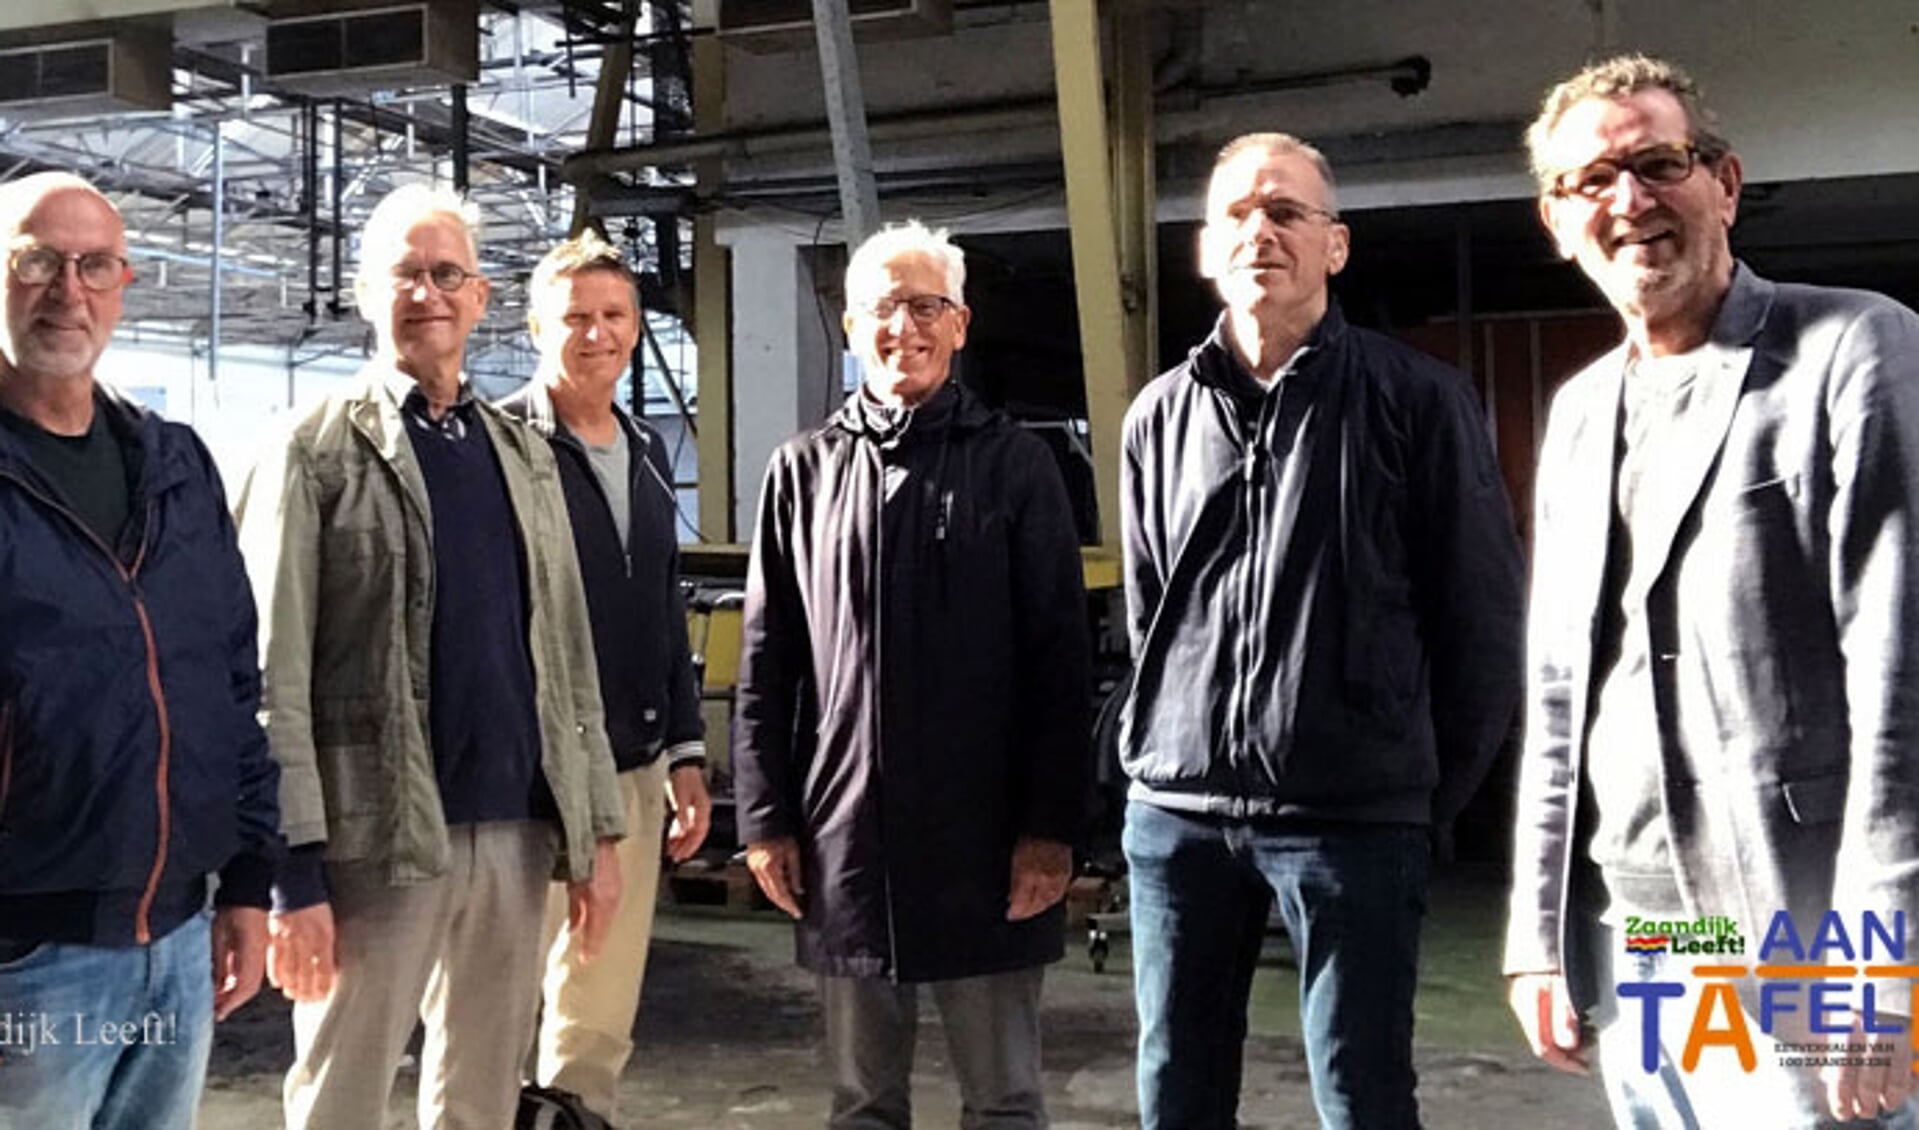 De kerngroep ‘Zaandijk Aan Tafel!’ v.l.n.r. : Ron Witbaard, Leo Walraven, Richard Kok, Dennis Meijer, Gert van Houts en Rob Witbaard (op de foto ontbreekt Age de Jong).